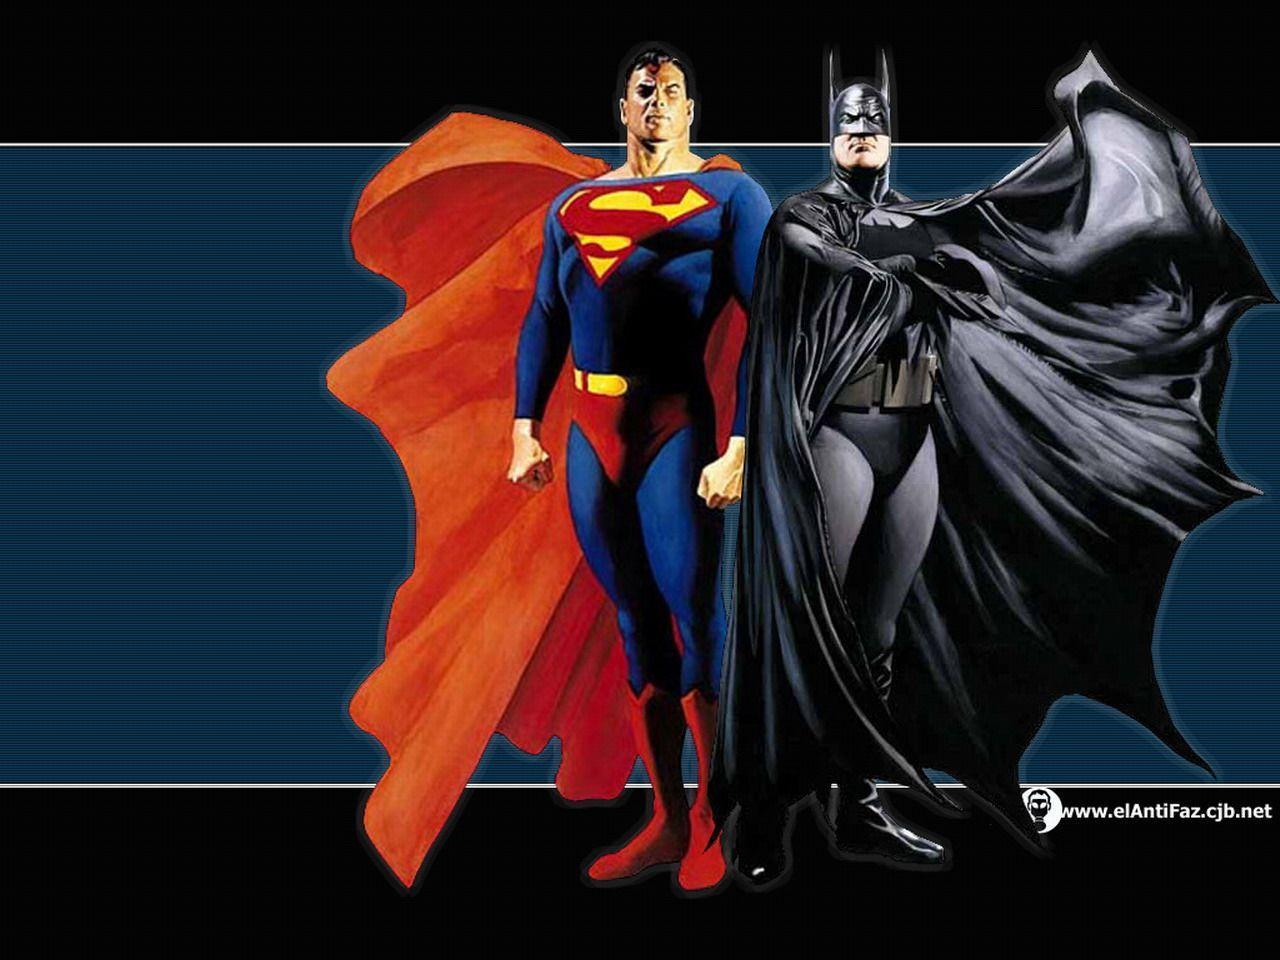 Alex Ross Art Superman And Batman 1280 X 960 Batman Wallpaper